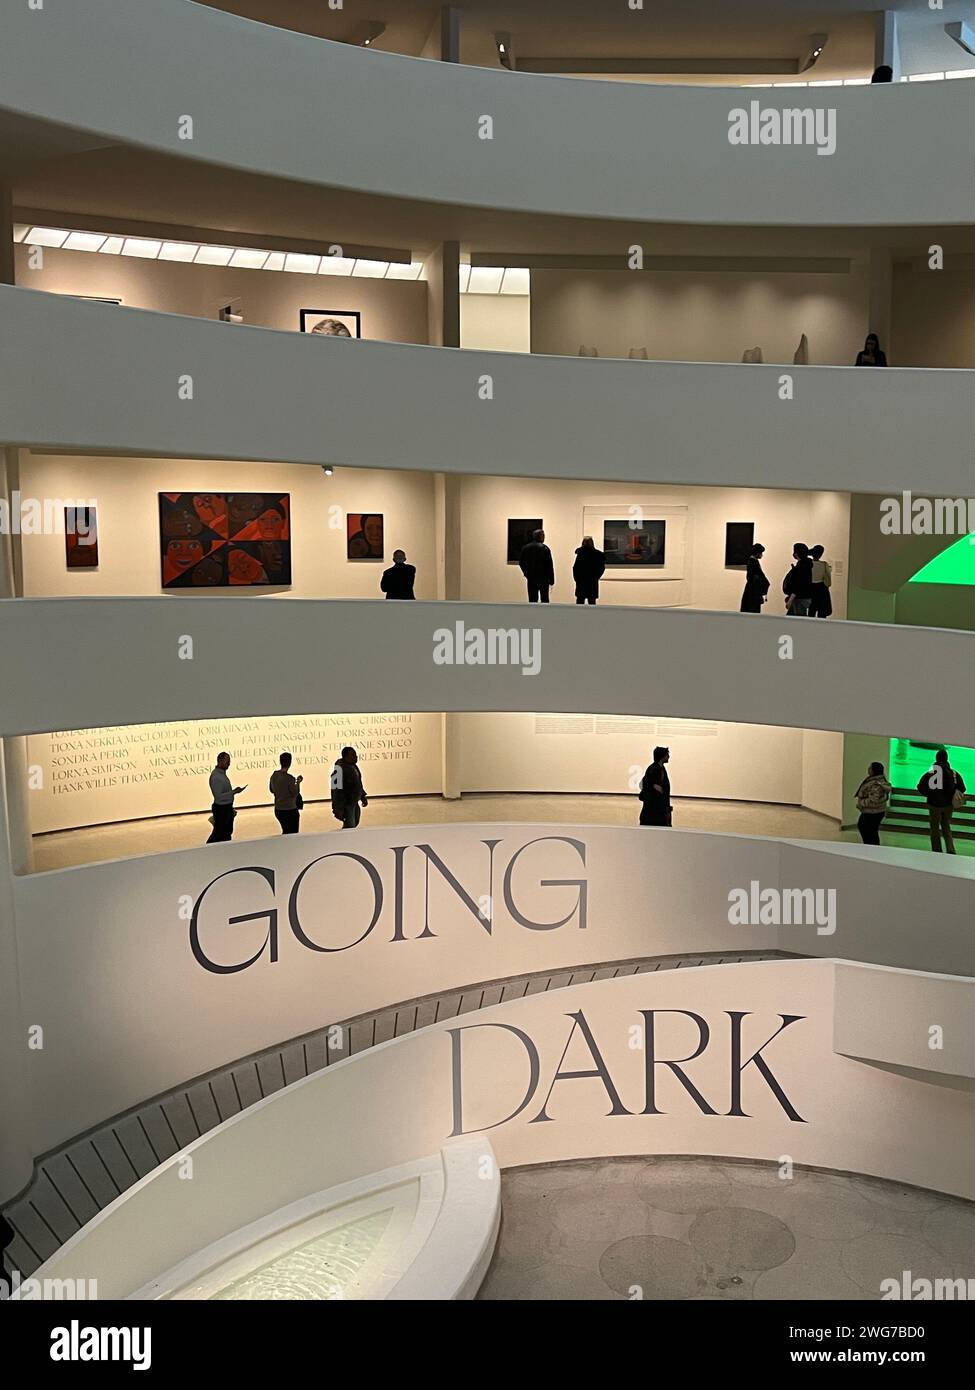 Going Dark: The Contemporary Figure at the Edge of Visibility presenta opere d'arte che presentano figure parzialmente oscurate o nascoste, posizionandole così al "bordo della visibilità". Guggenheim Museum di New York. Foto Stock